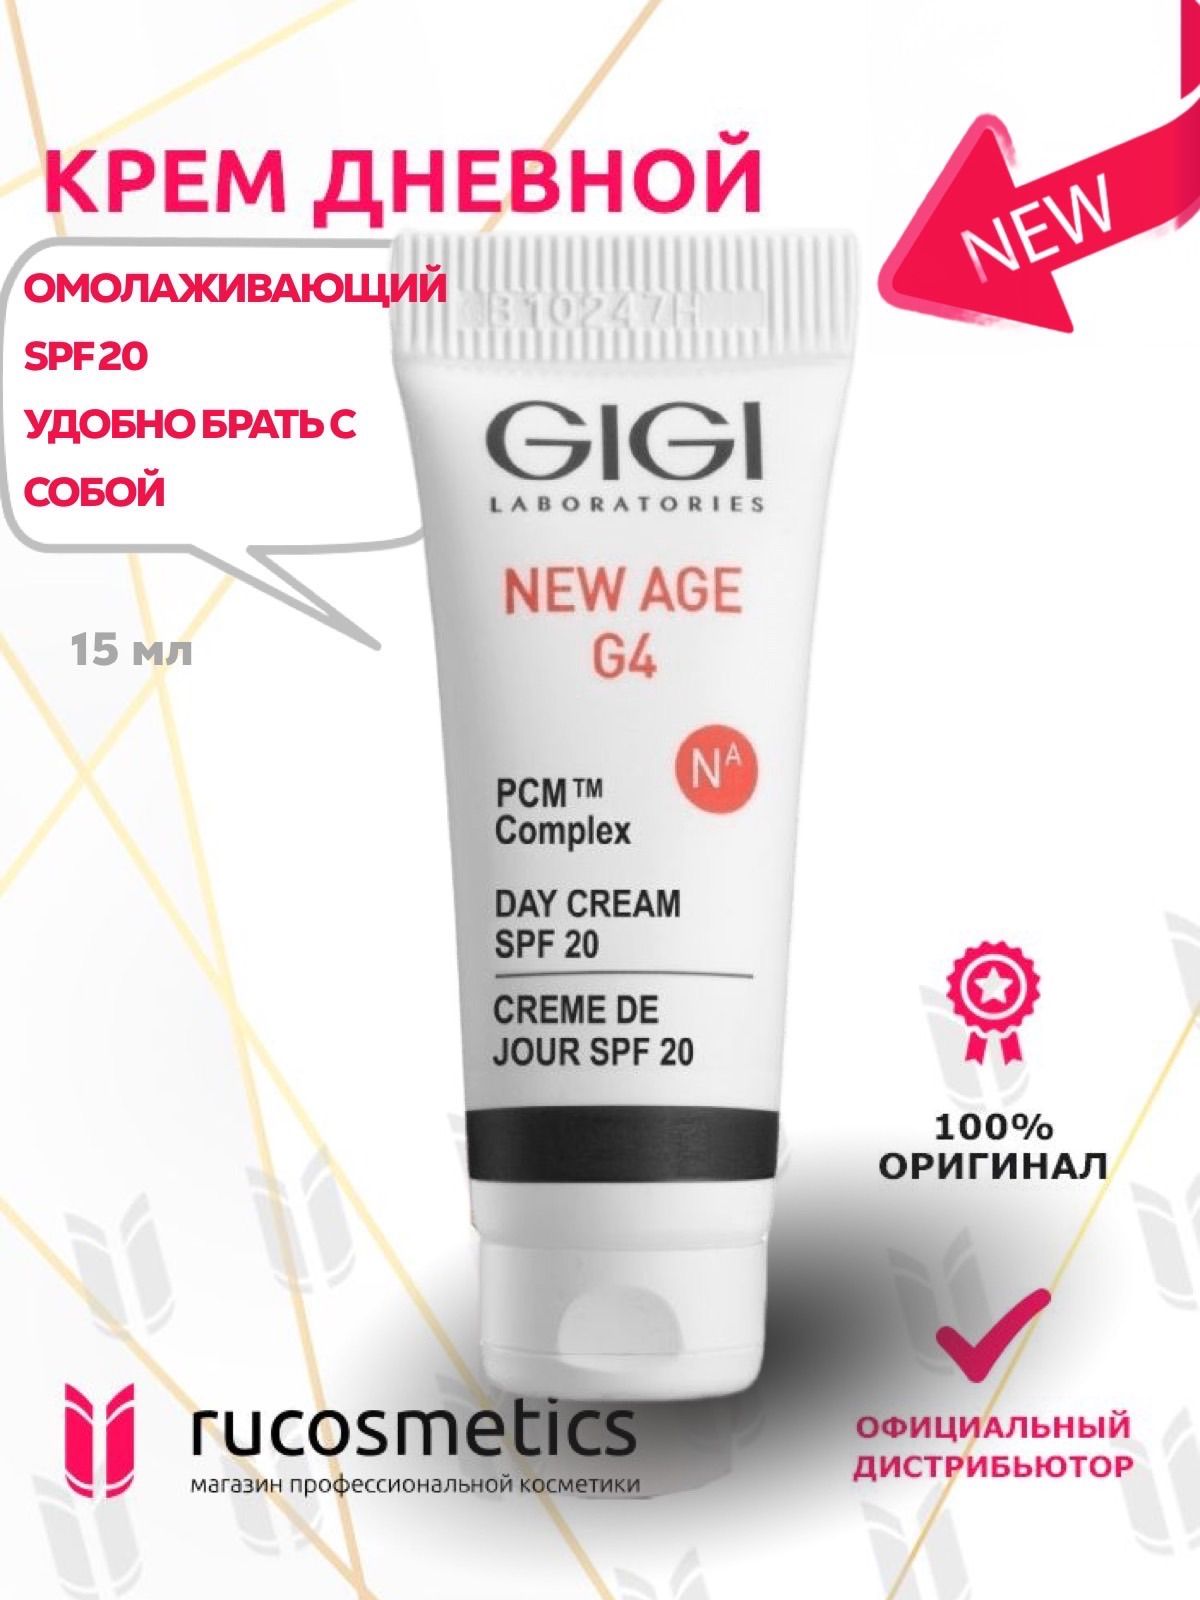 Gigi new age g4. New age g4 Gigi крем дневной. Gigi набор New age g4. Gigi New age g4 дневной крем SPF 20 200мл.